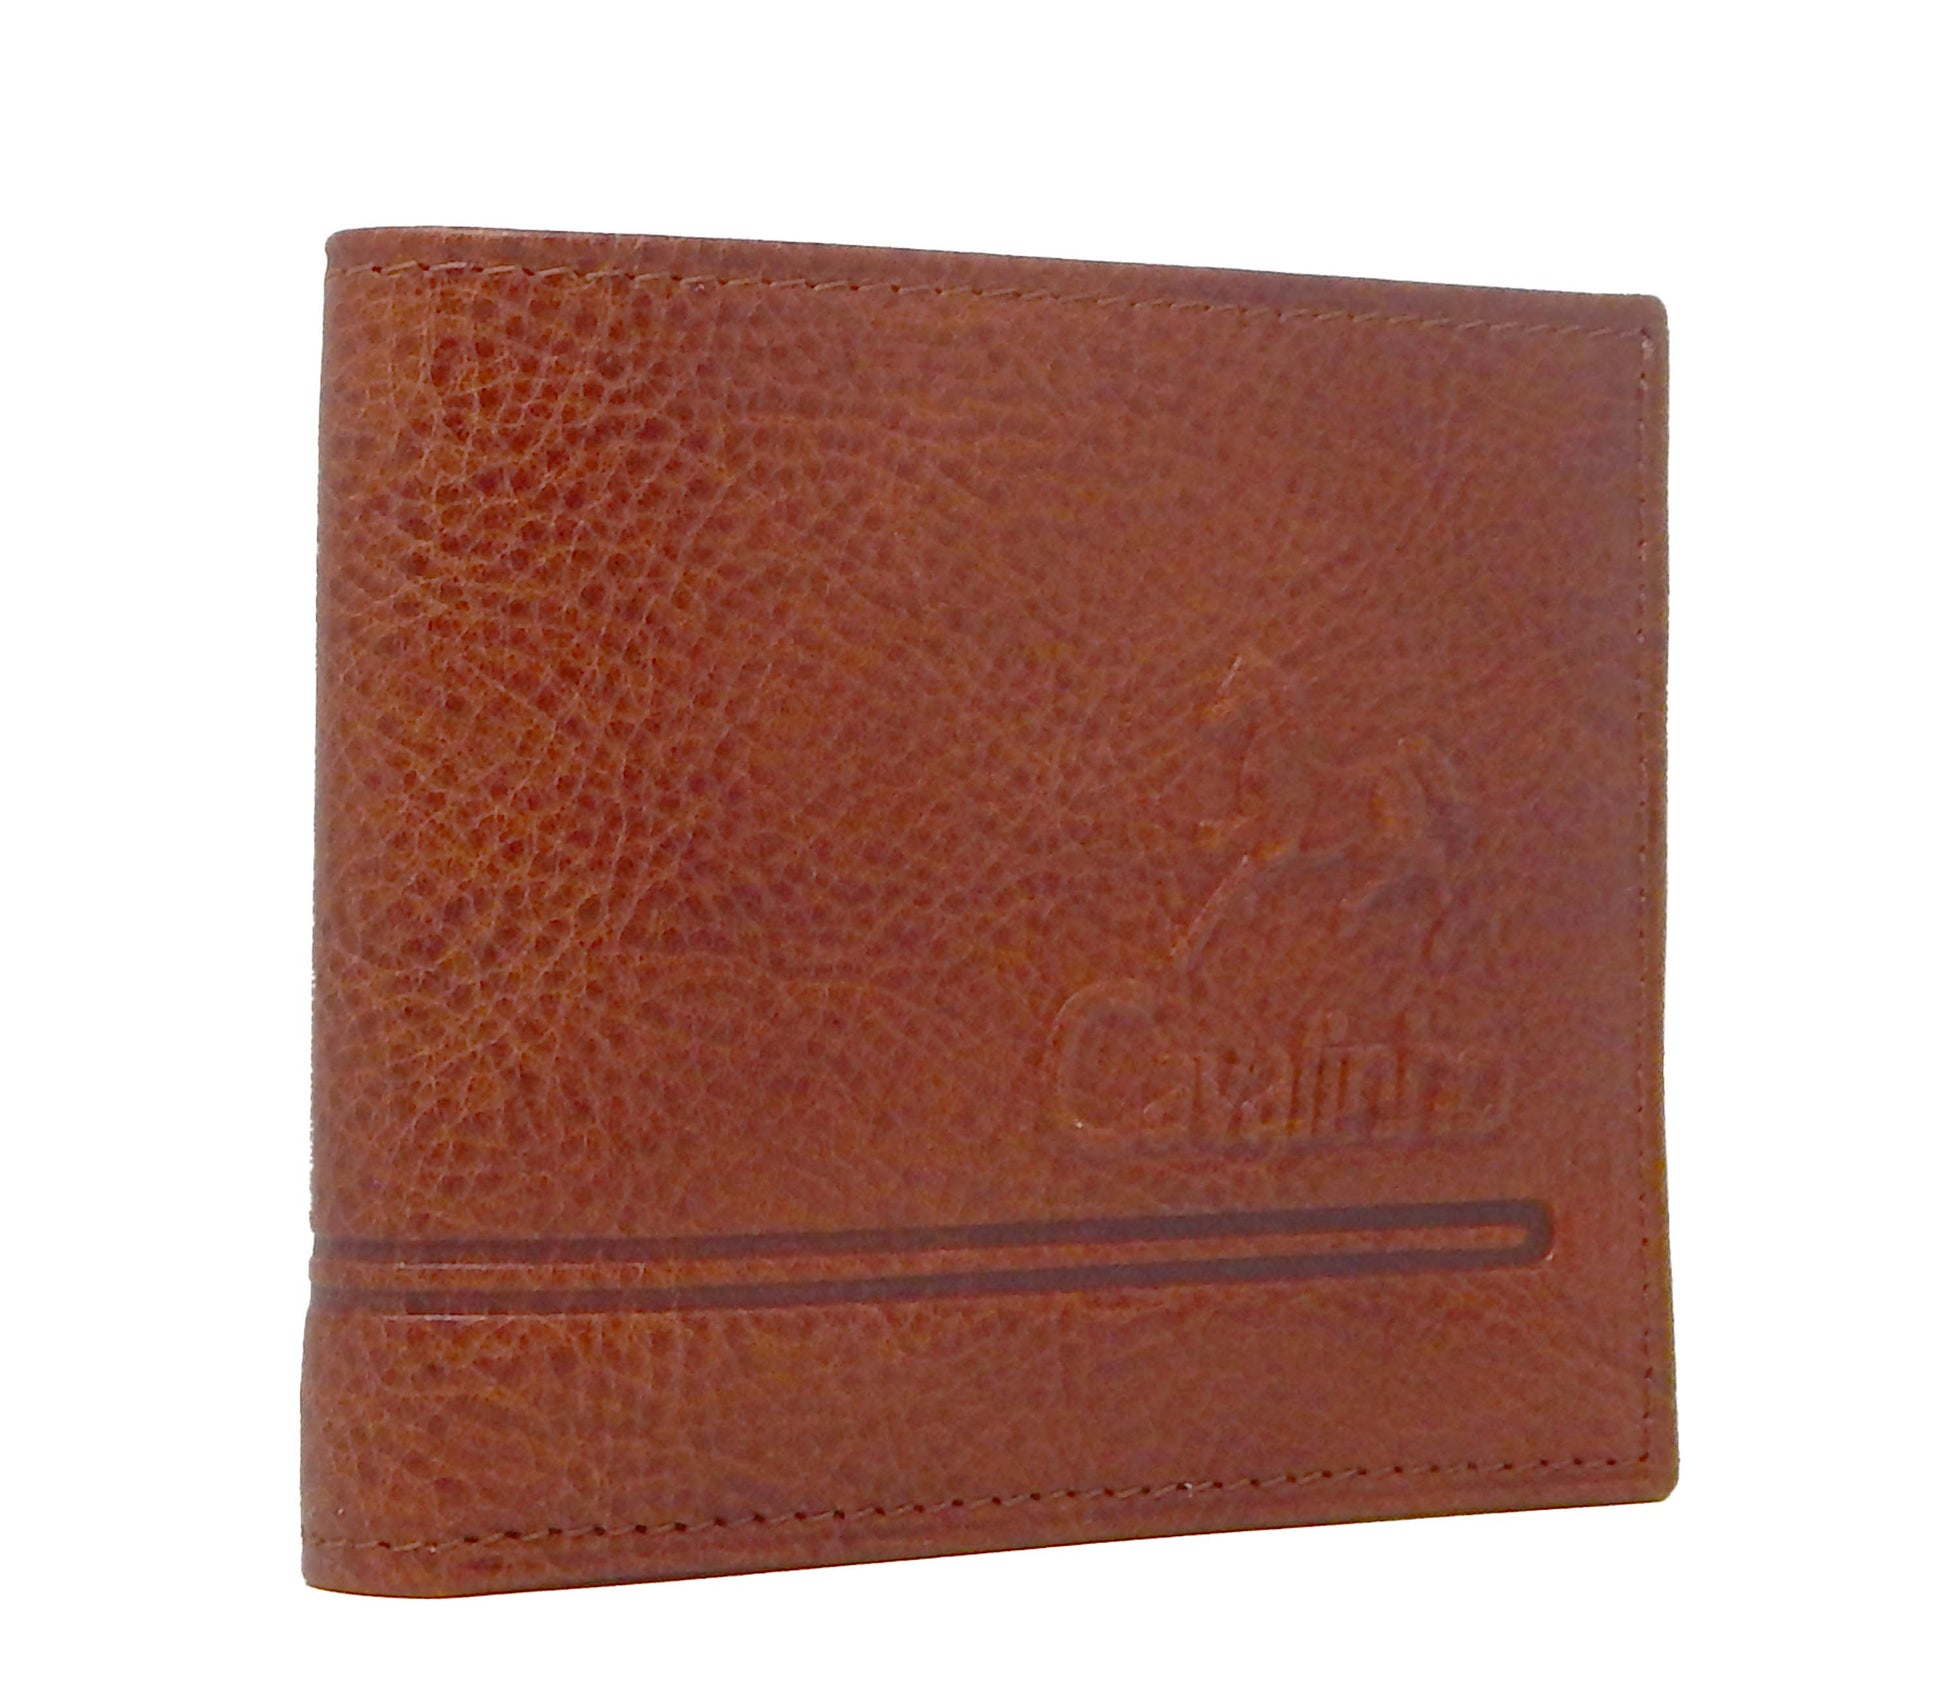 #color_ SaddleBrown | Cavalinho Men's 2 in 1 Bifold Leather Wallet - SaddleBrown - 28160528.13.99_2